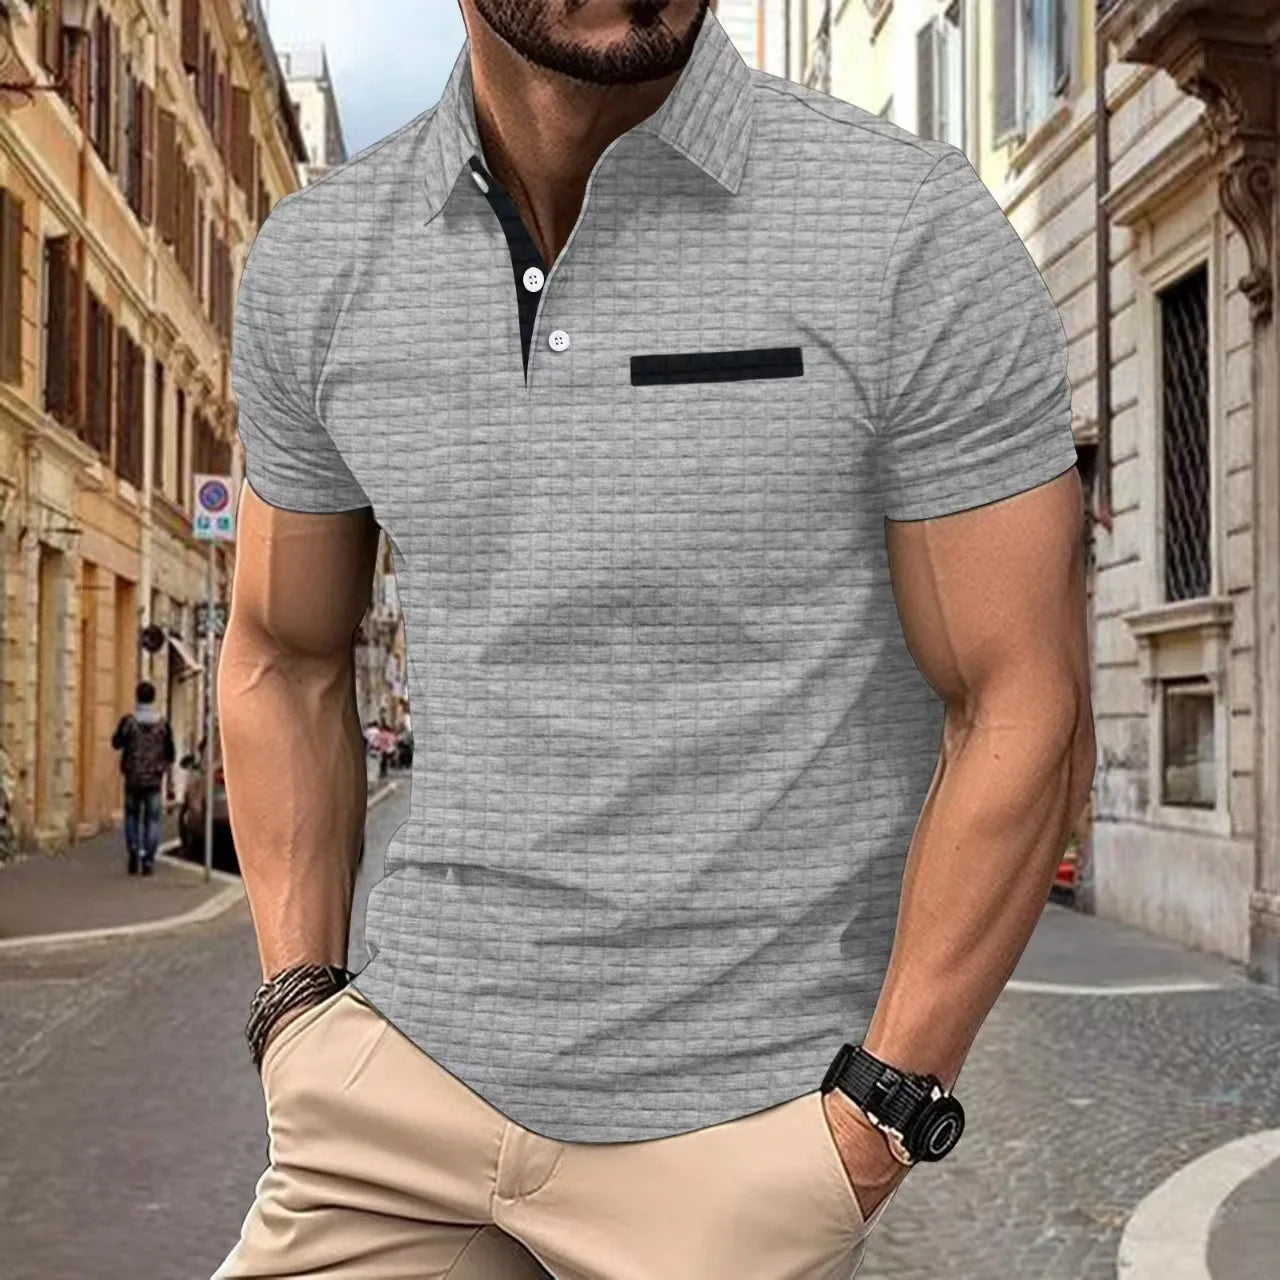 Men's POLO Shirt lapel Jacquard plaid button-up